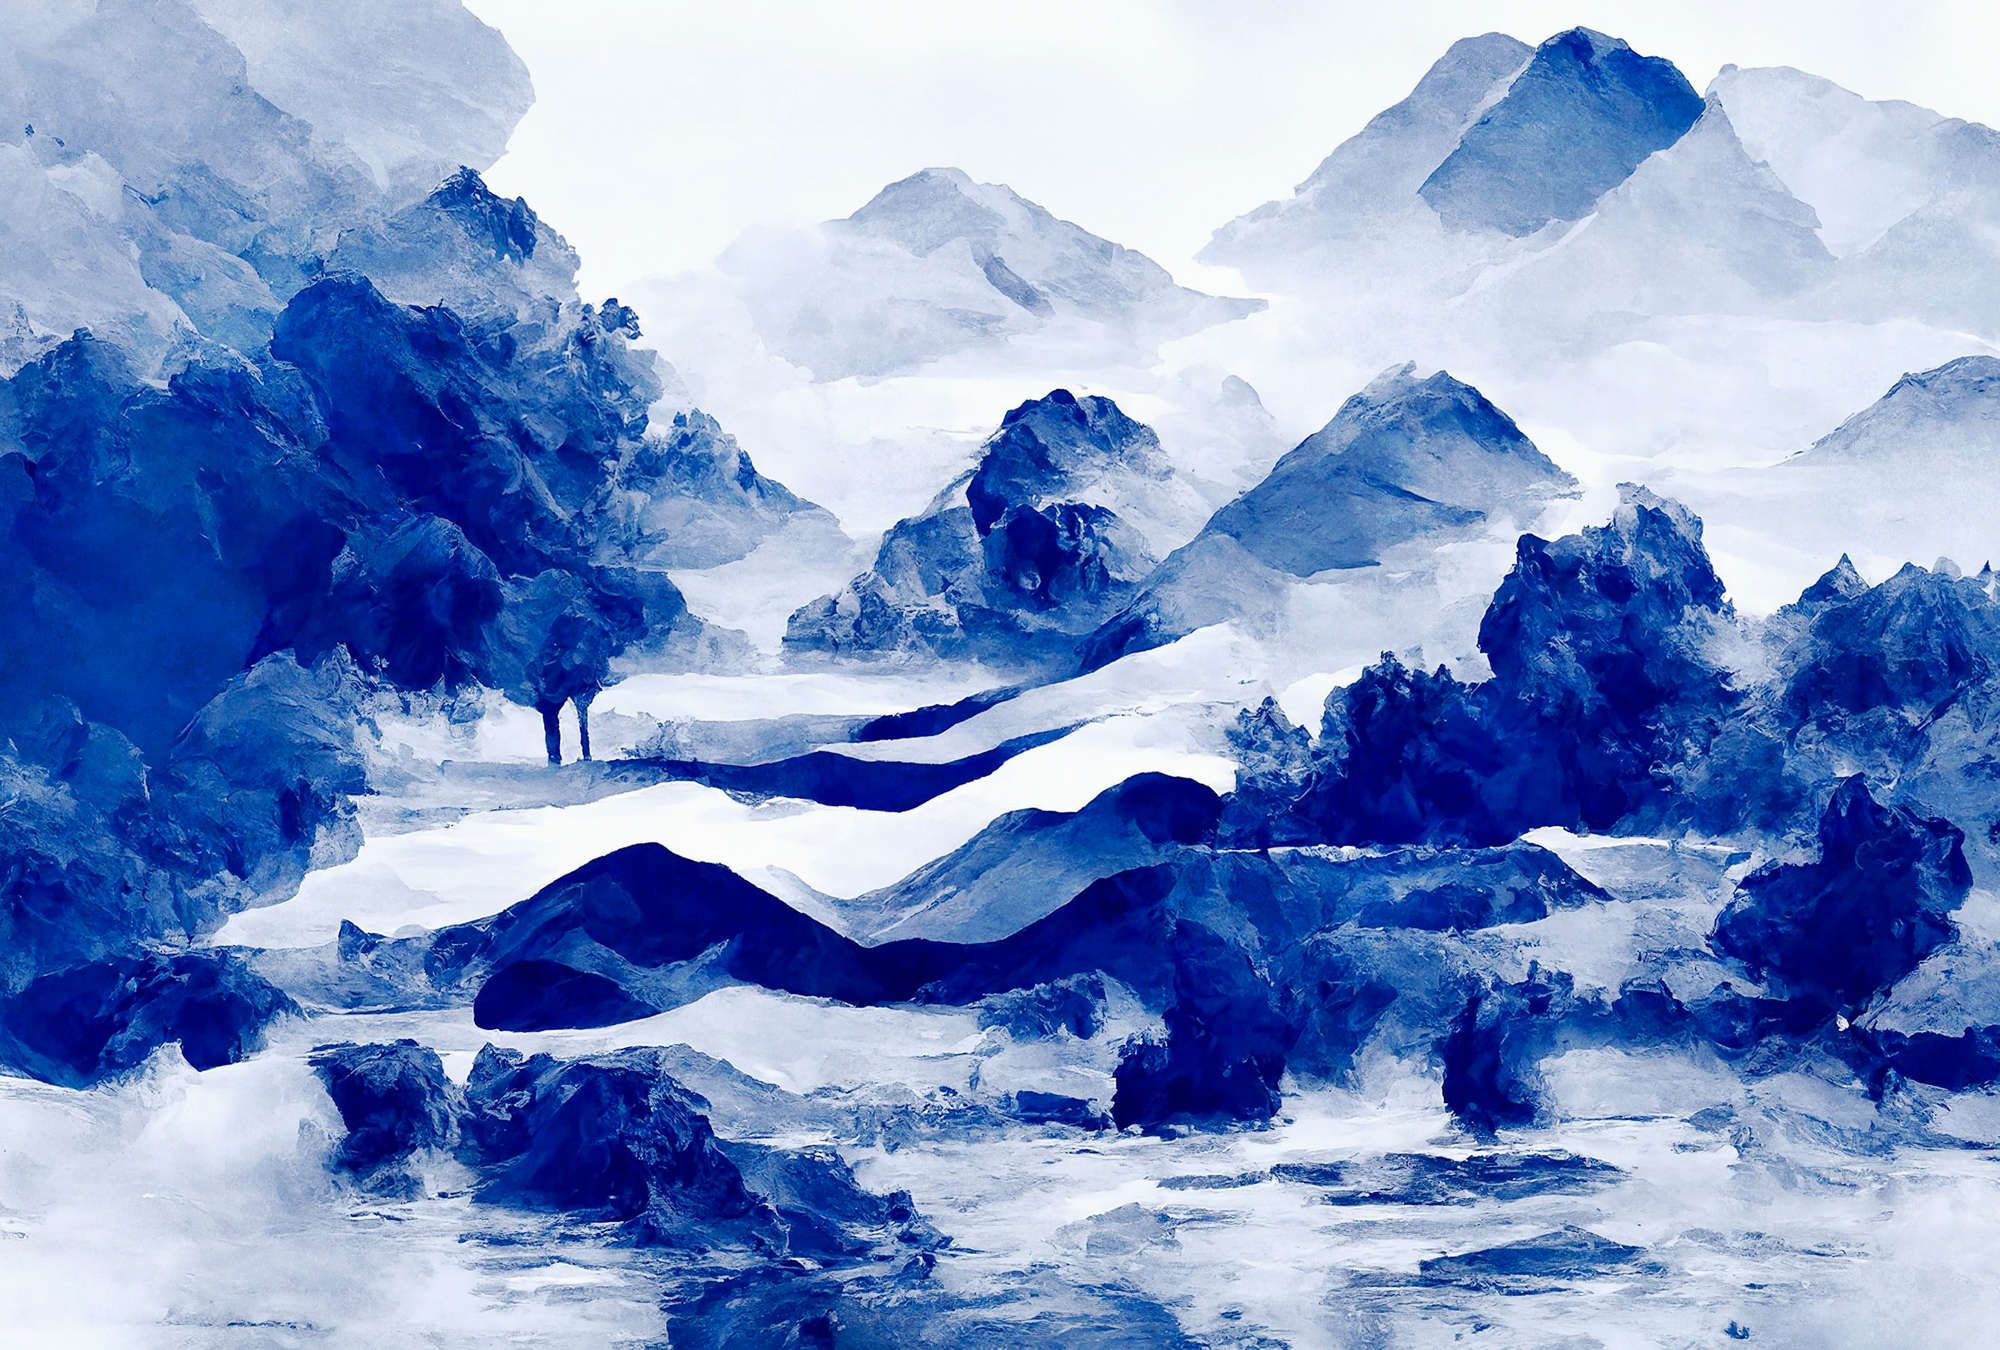             Fotomural »tinterra 3« - Paisaje con montañas y niebla - Azul | Tela sin tejer lisa, ligeramente nacarada y brillante
        